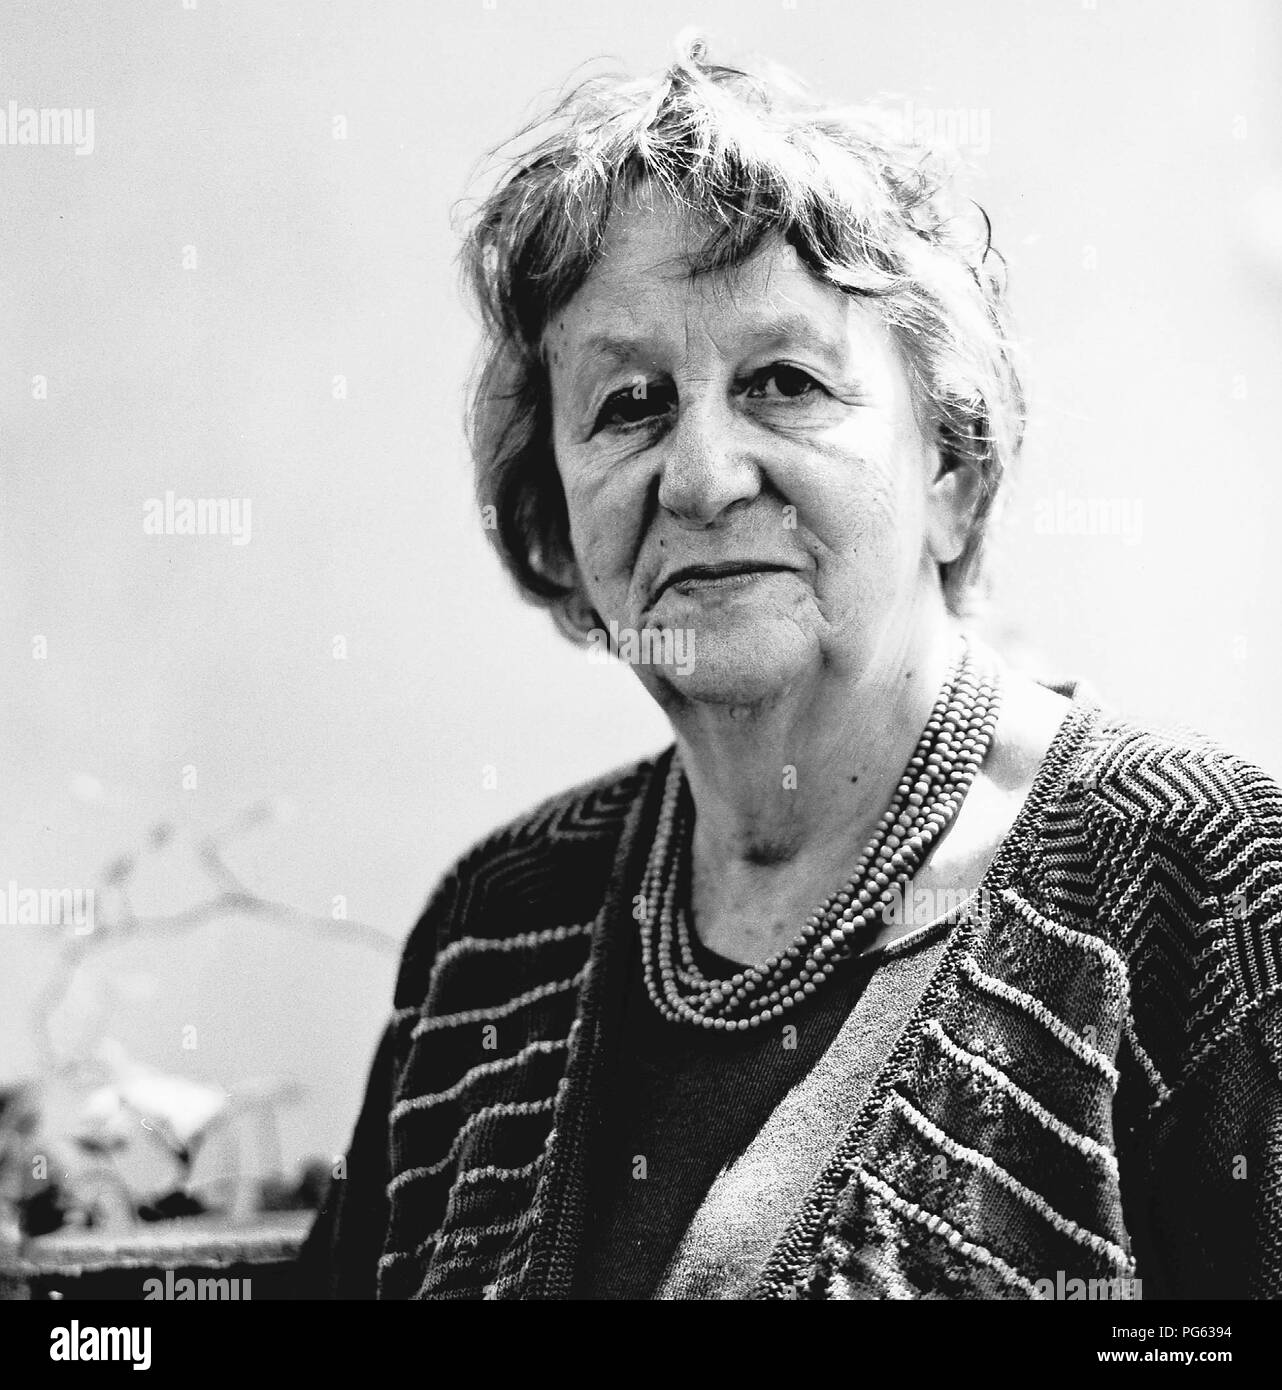 Ingrid Noll, German writer. Stock Photo